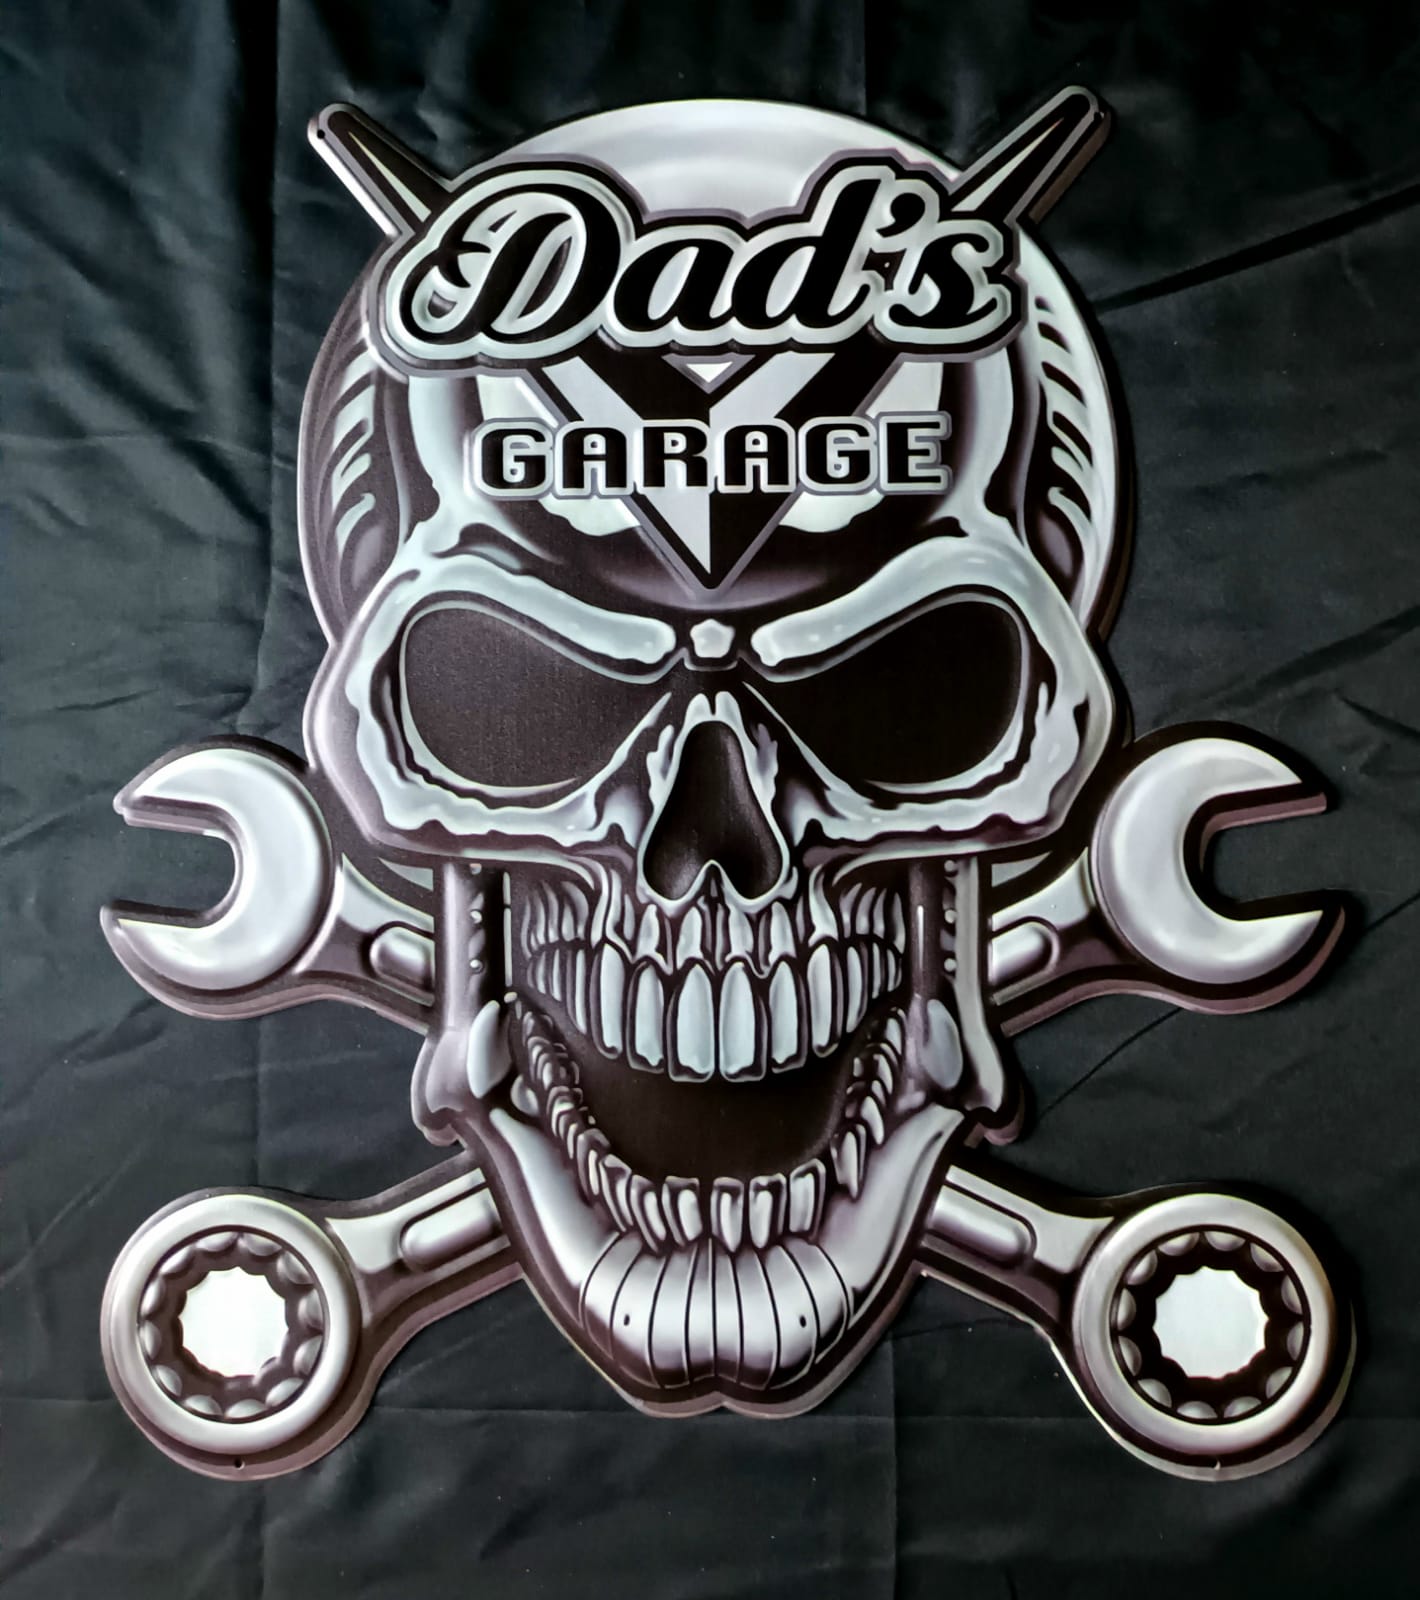 Blechschild "Dads Garage Totenkopf"